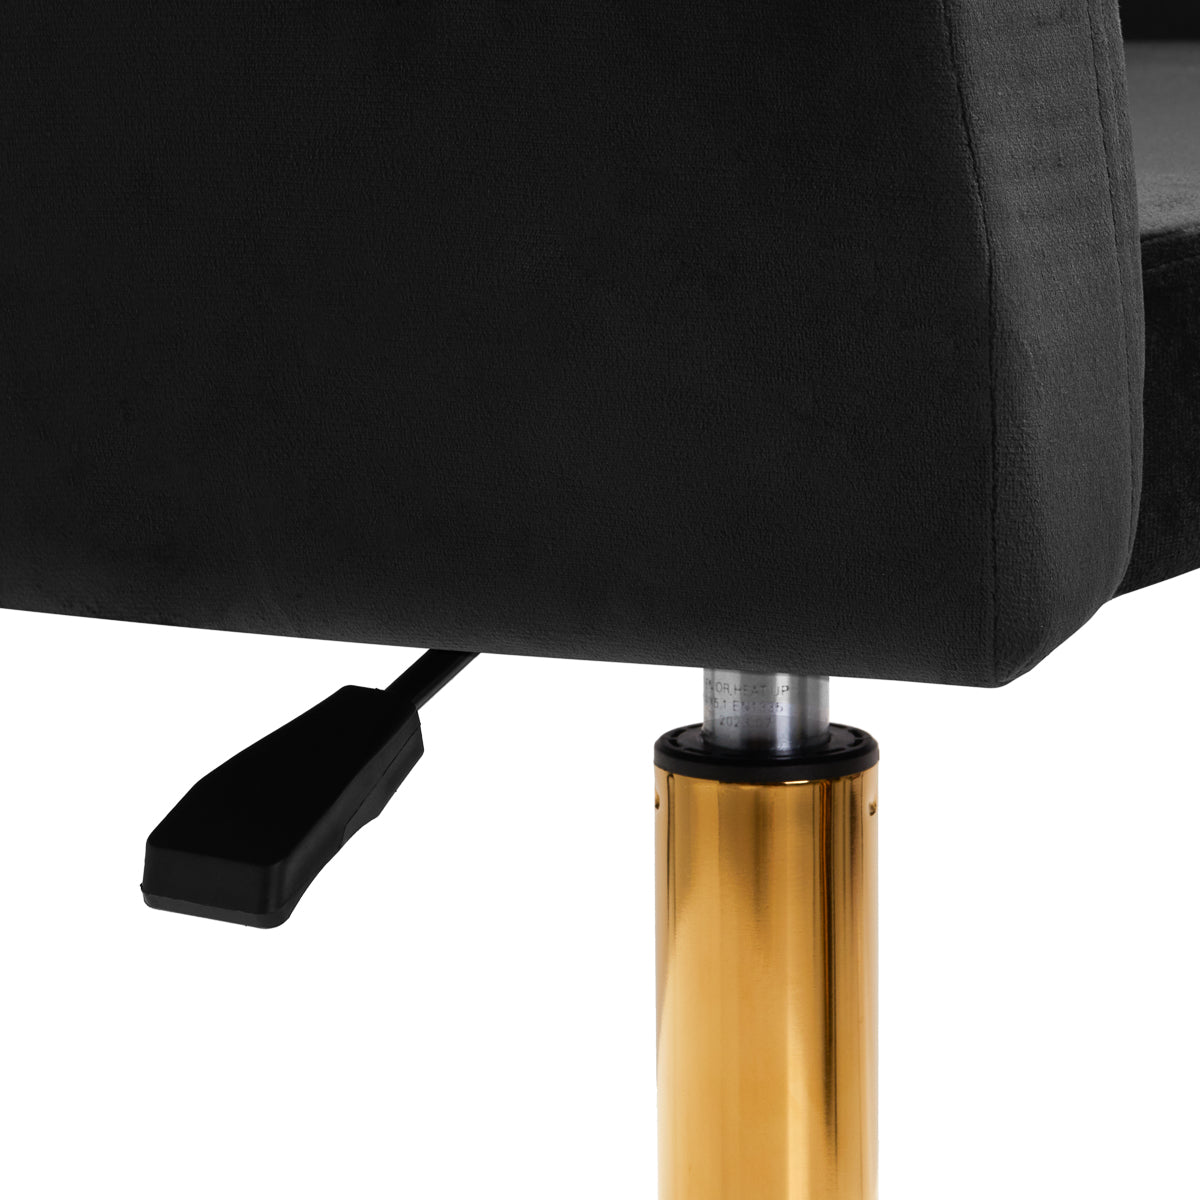 4Rico Swivel Chair QS-BL14G Black